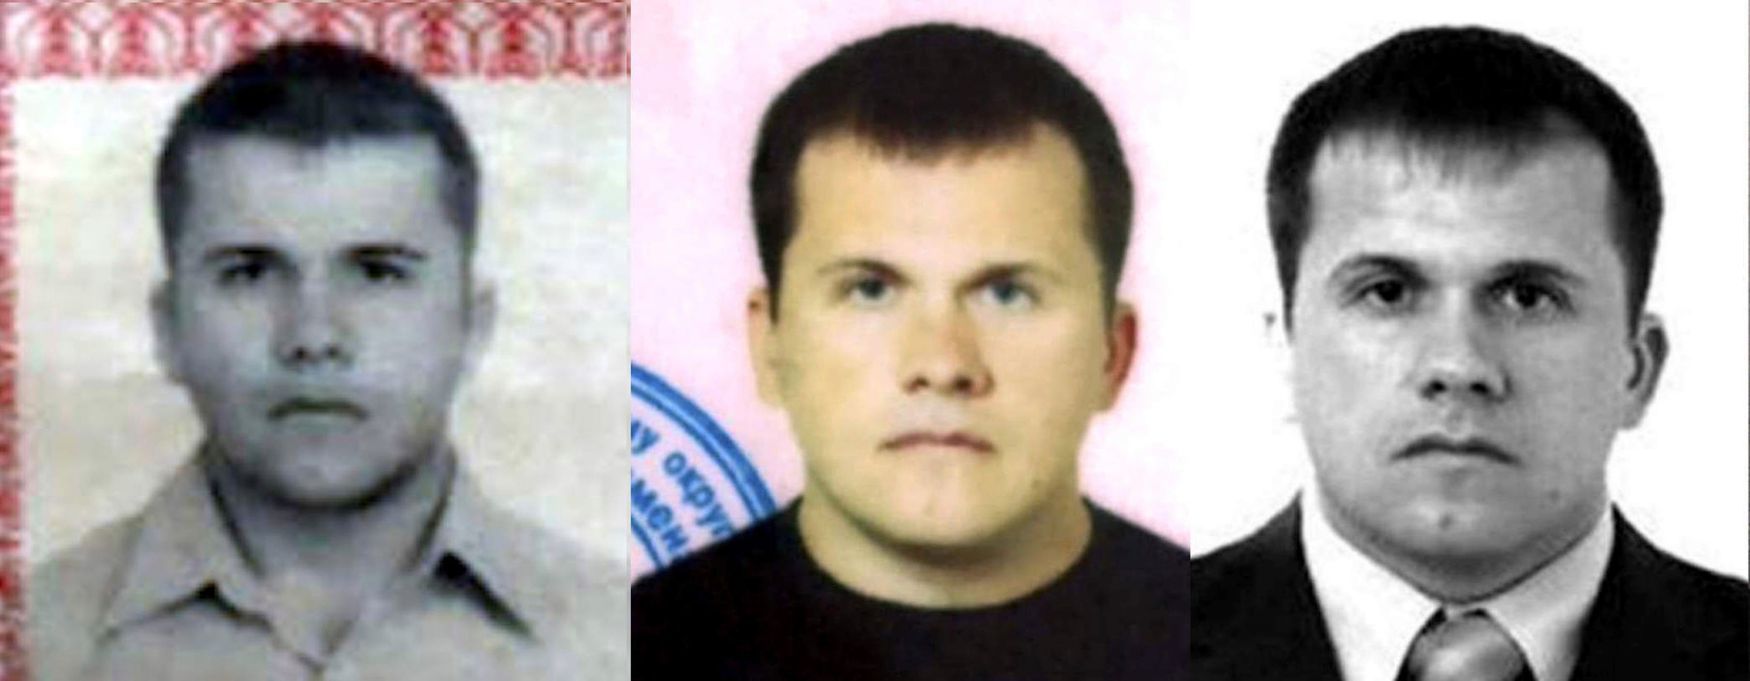 Alexandr Miškin, který je podezřelý z vraždy Sergeje Skripala